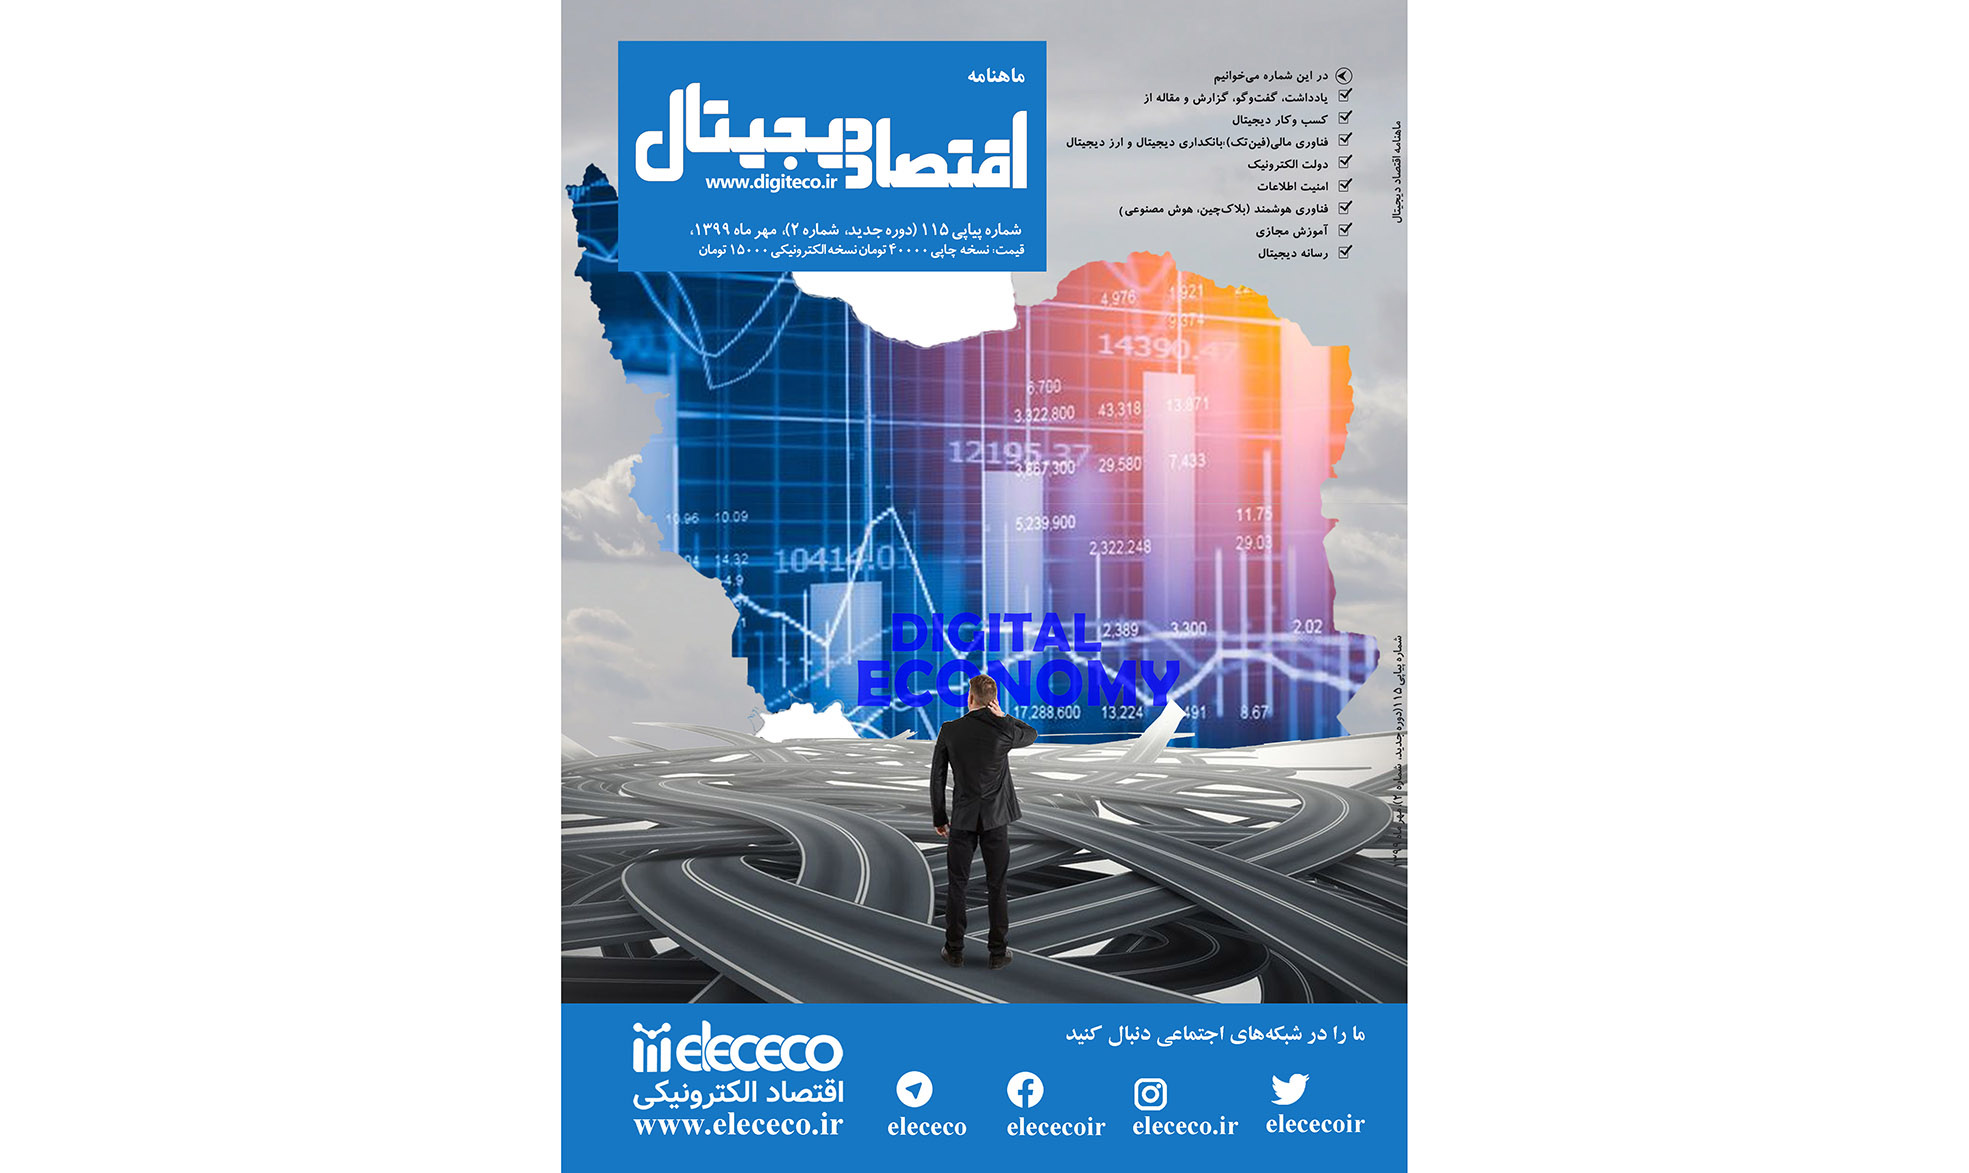 ماهنامه ” اقتصاد دیجیتال” شماره 2، مهرماه ۱۳۹۹